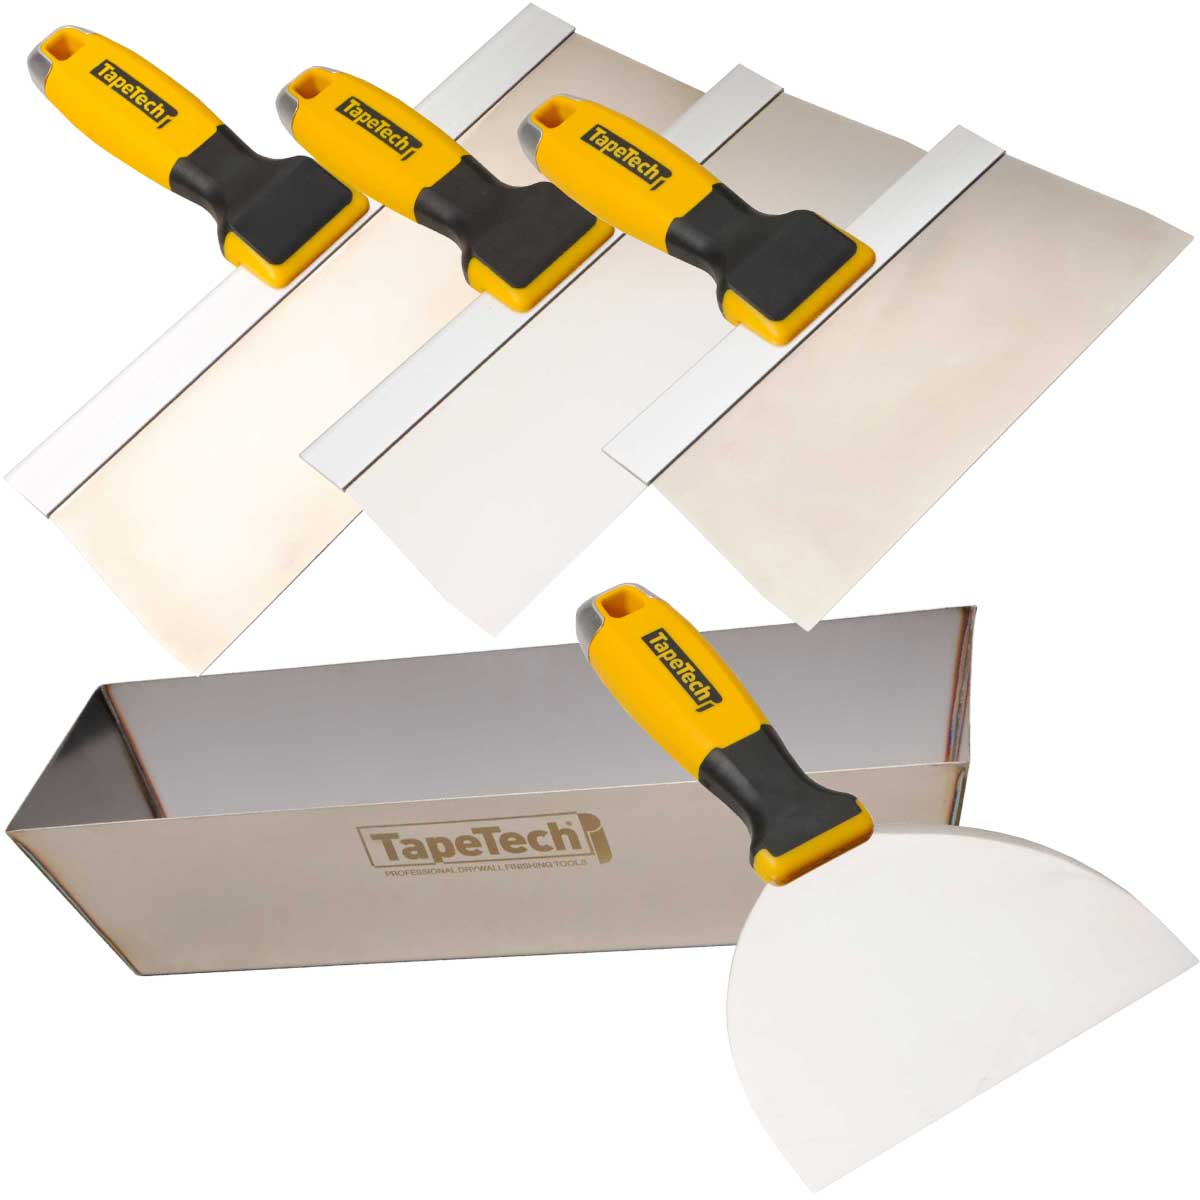 TapeTech Stainless Steel Taping kit